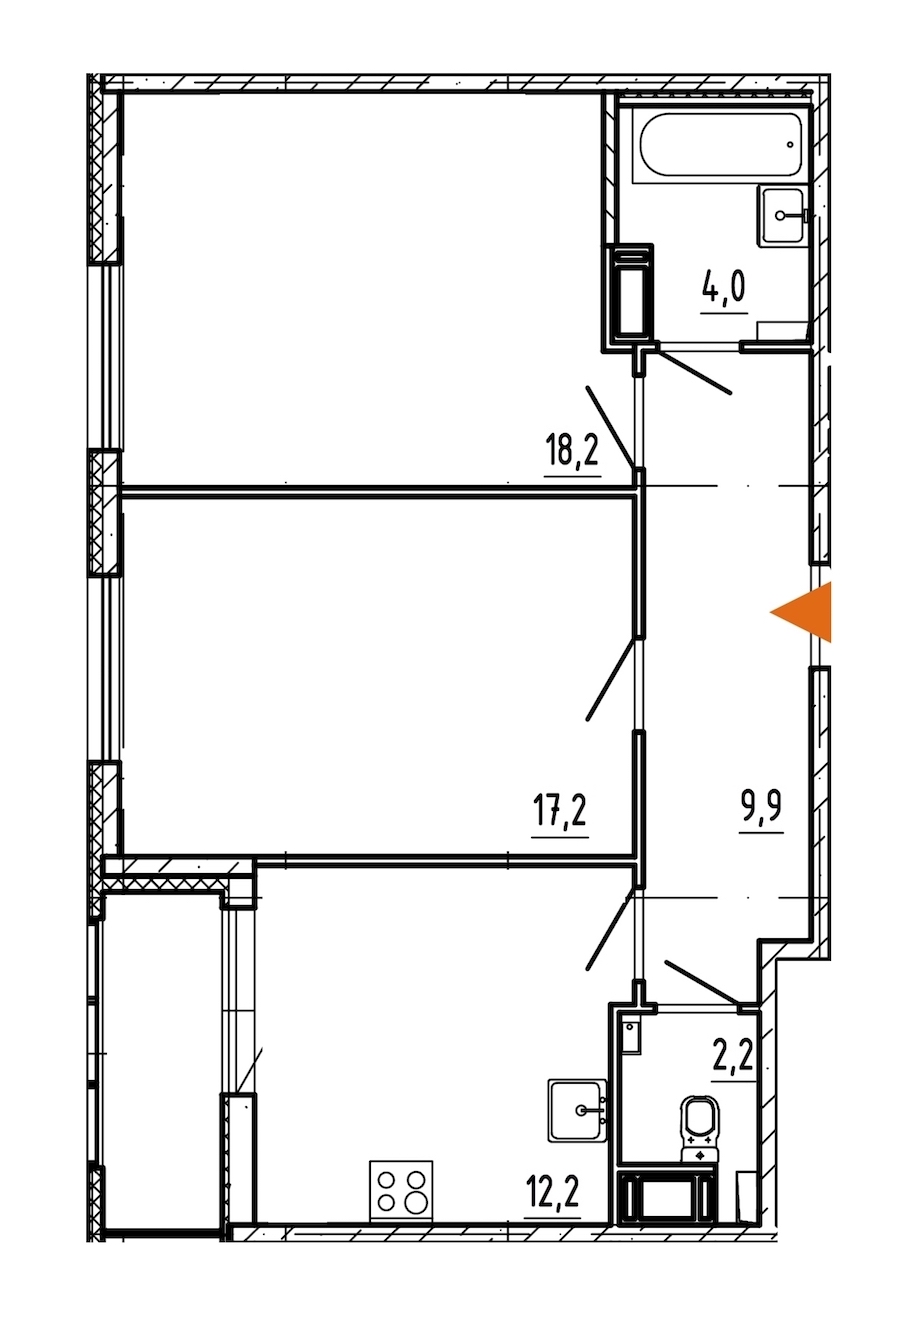 Двухкомнатная квартира в Эталон ЛенСпецСМУ: площадь 65.6 м2 , этаж: 7 – купить в Санкт-Петербурге